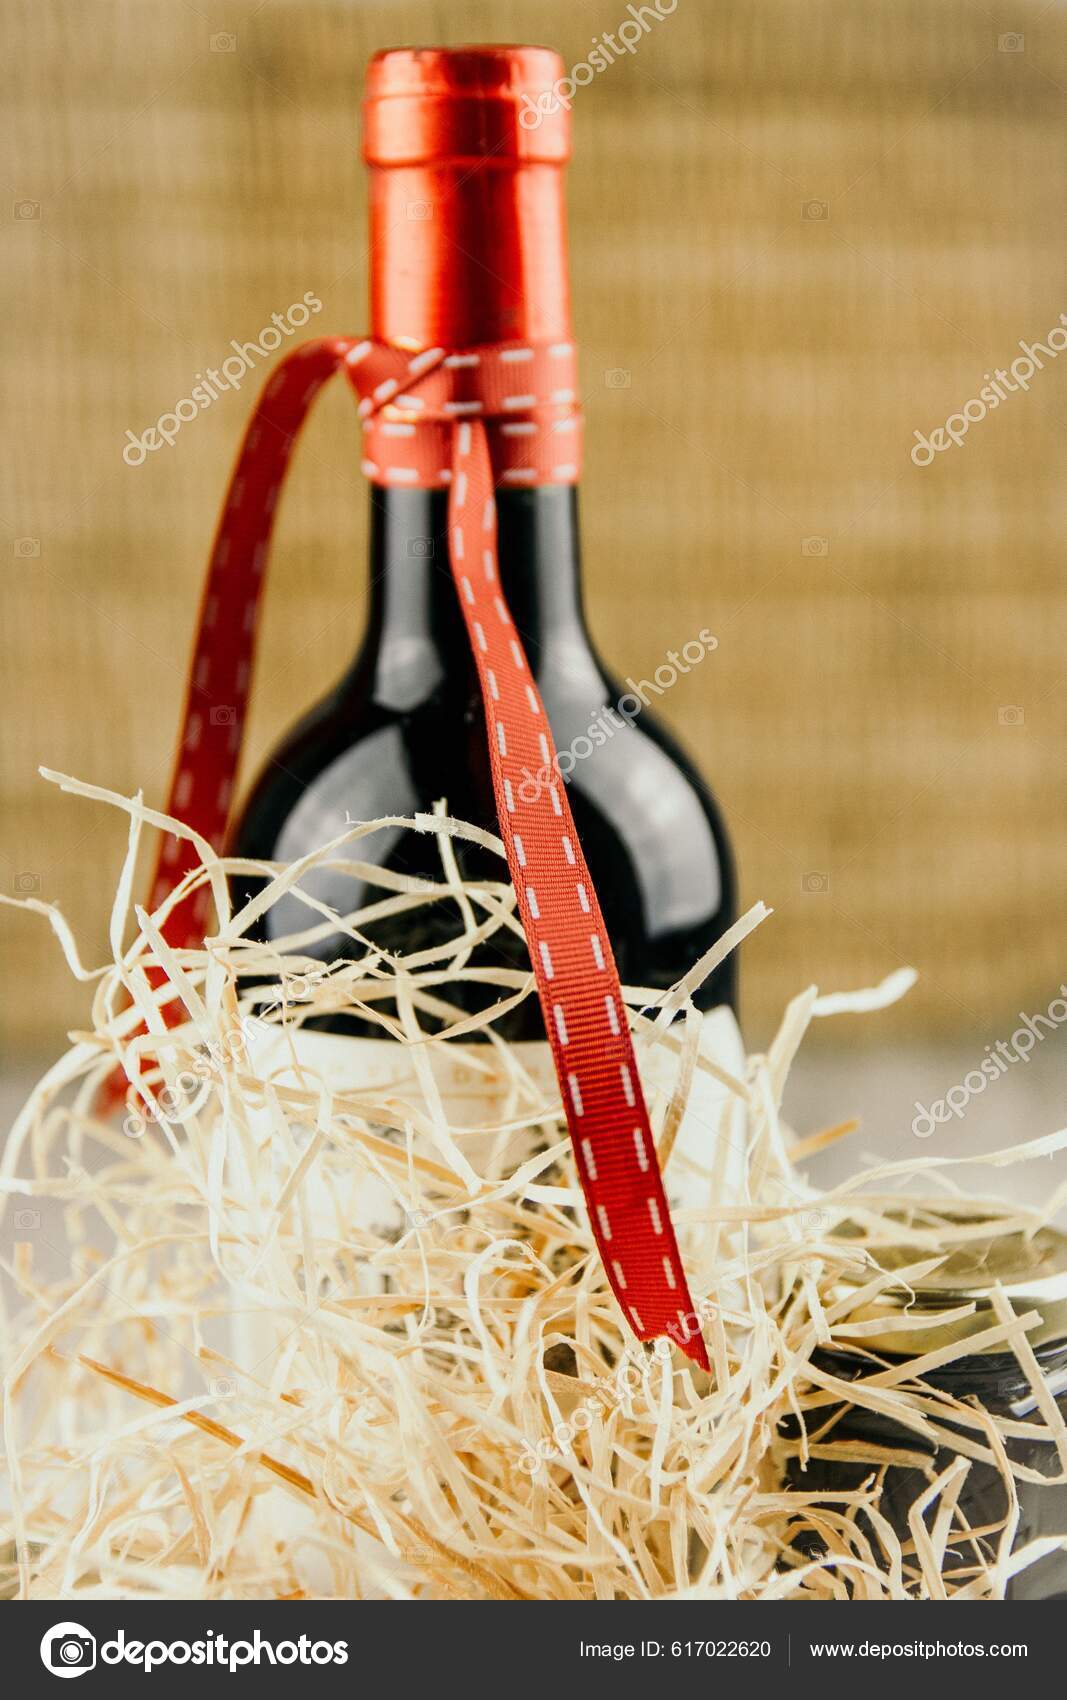 https://st5.depositphotos.com/67903508/61702/i/1600/depositphotos_617022620-stock-photo-vertical-shot-bottle-wine-ribbon.jpg